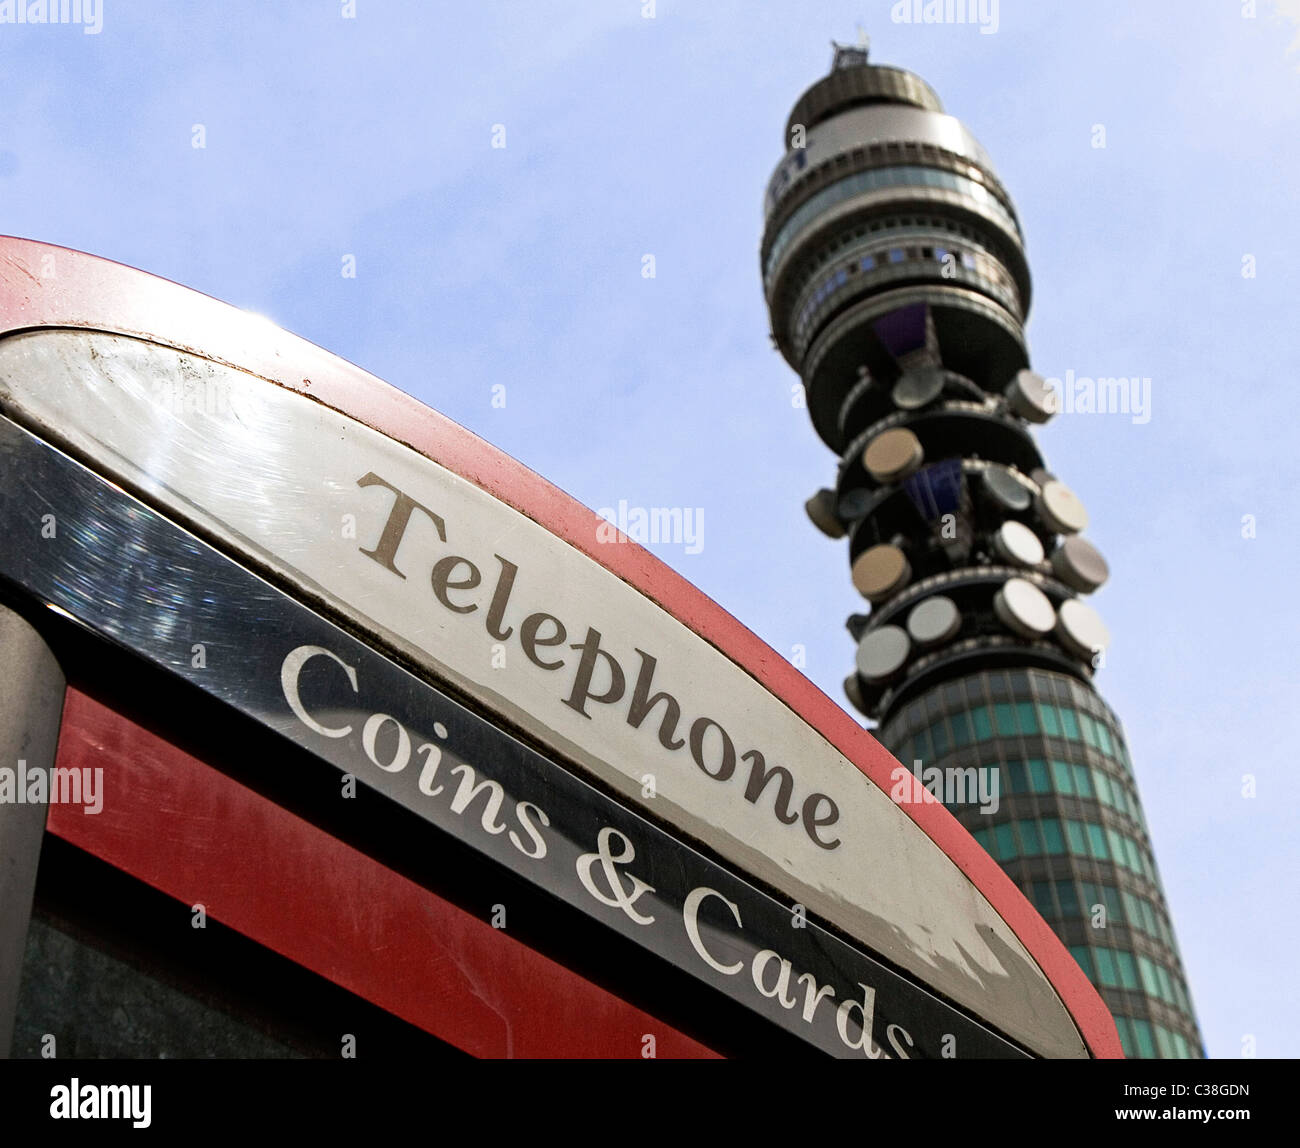 La BT Tower è visibile dietro un BT cabina telefonica nel centro di Londra. Foto Stock